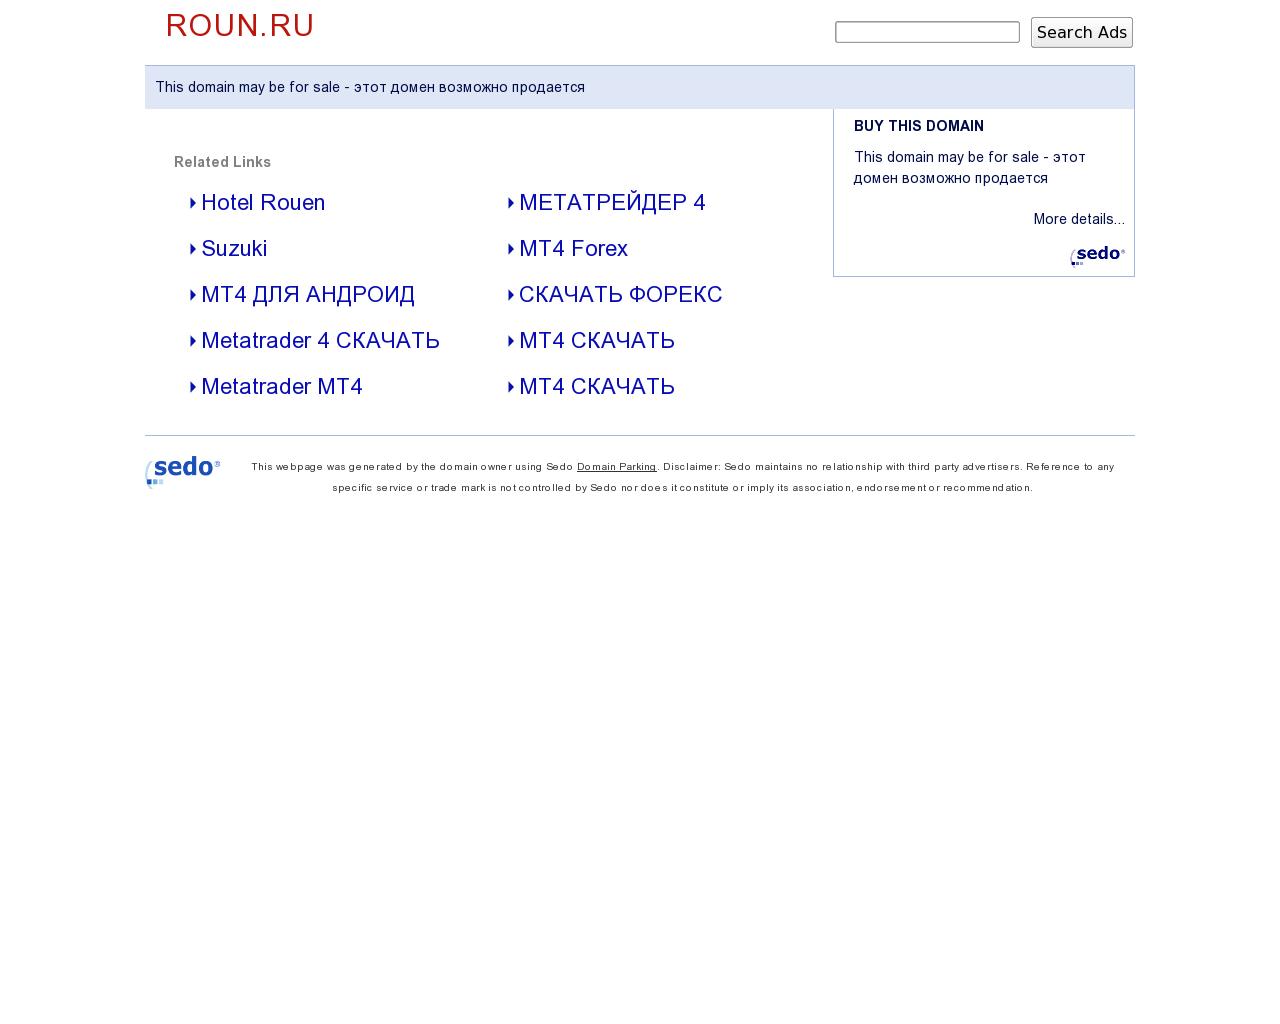 Изображение сайта roun.ru в разрешении 1280x1024